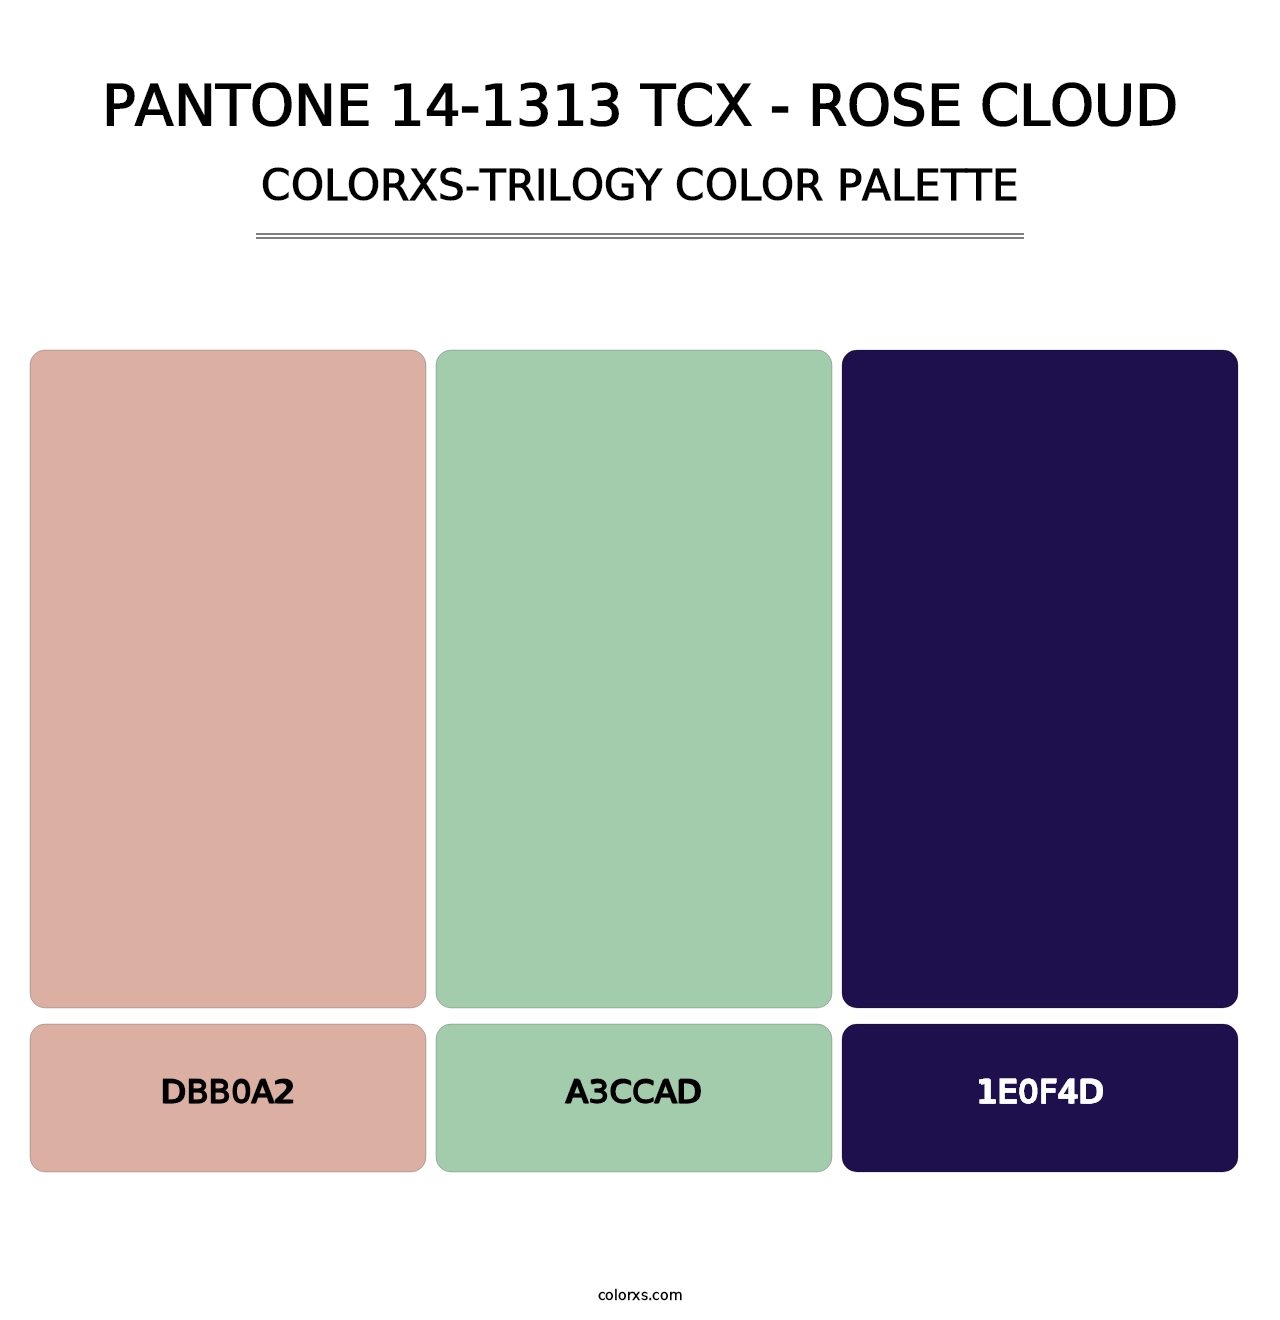 PANTONE 14-1313 TCX - Rose Cloud - Colorxs Trilogy Palette